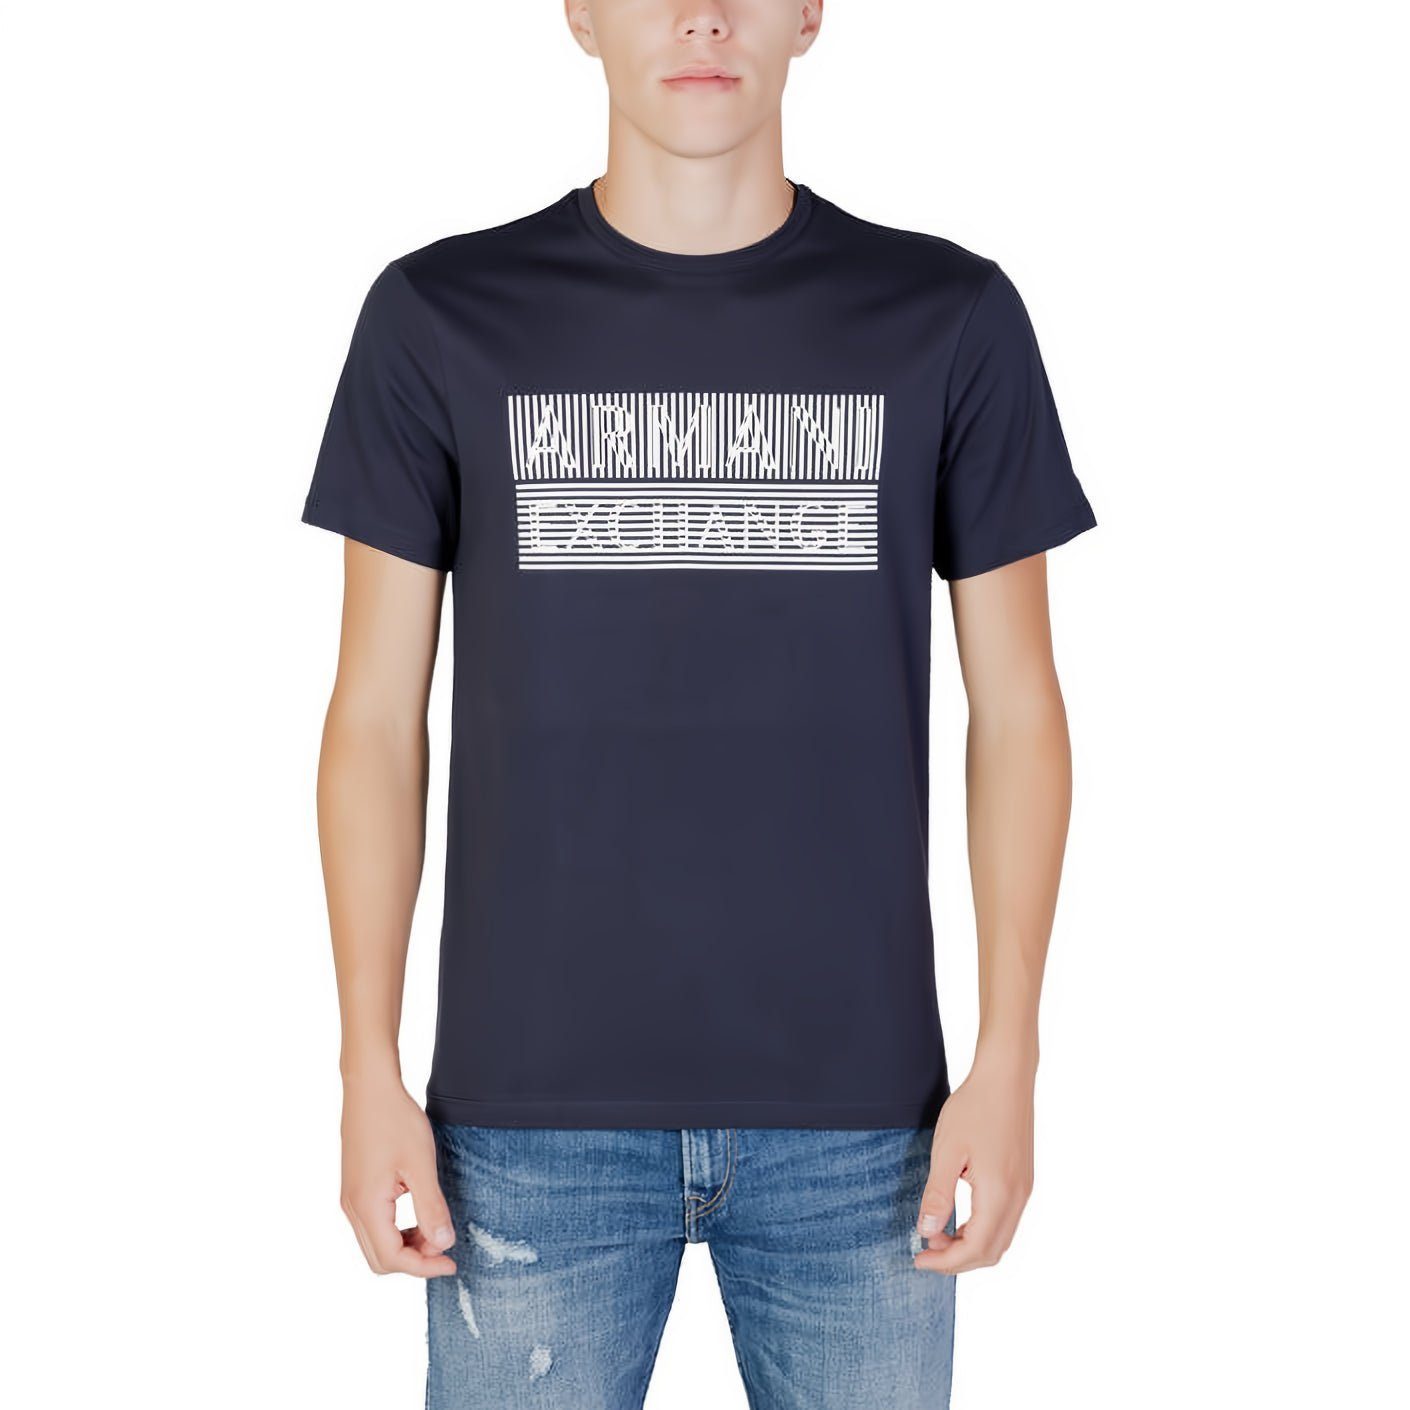 ARMANI EXCHANGE T-Shirt kurzarm, Rundhals, Must-Have ein Kleidungskollektion! für Ihre